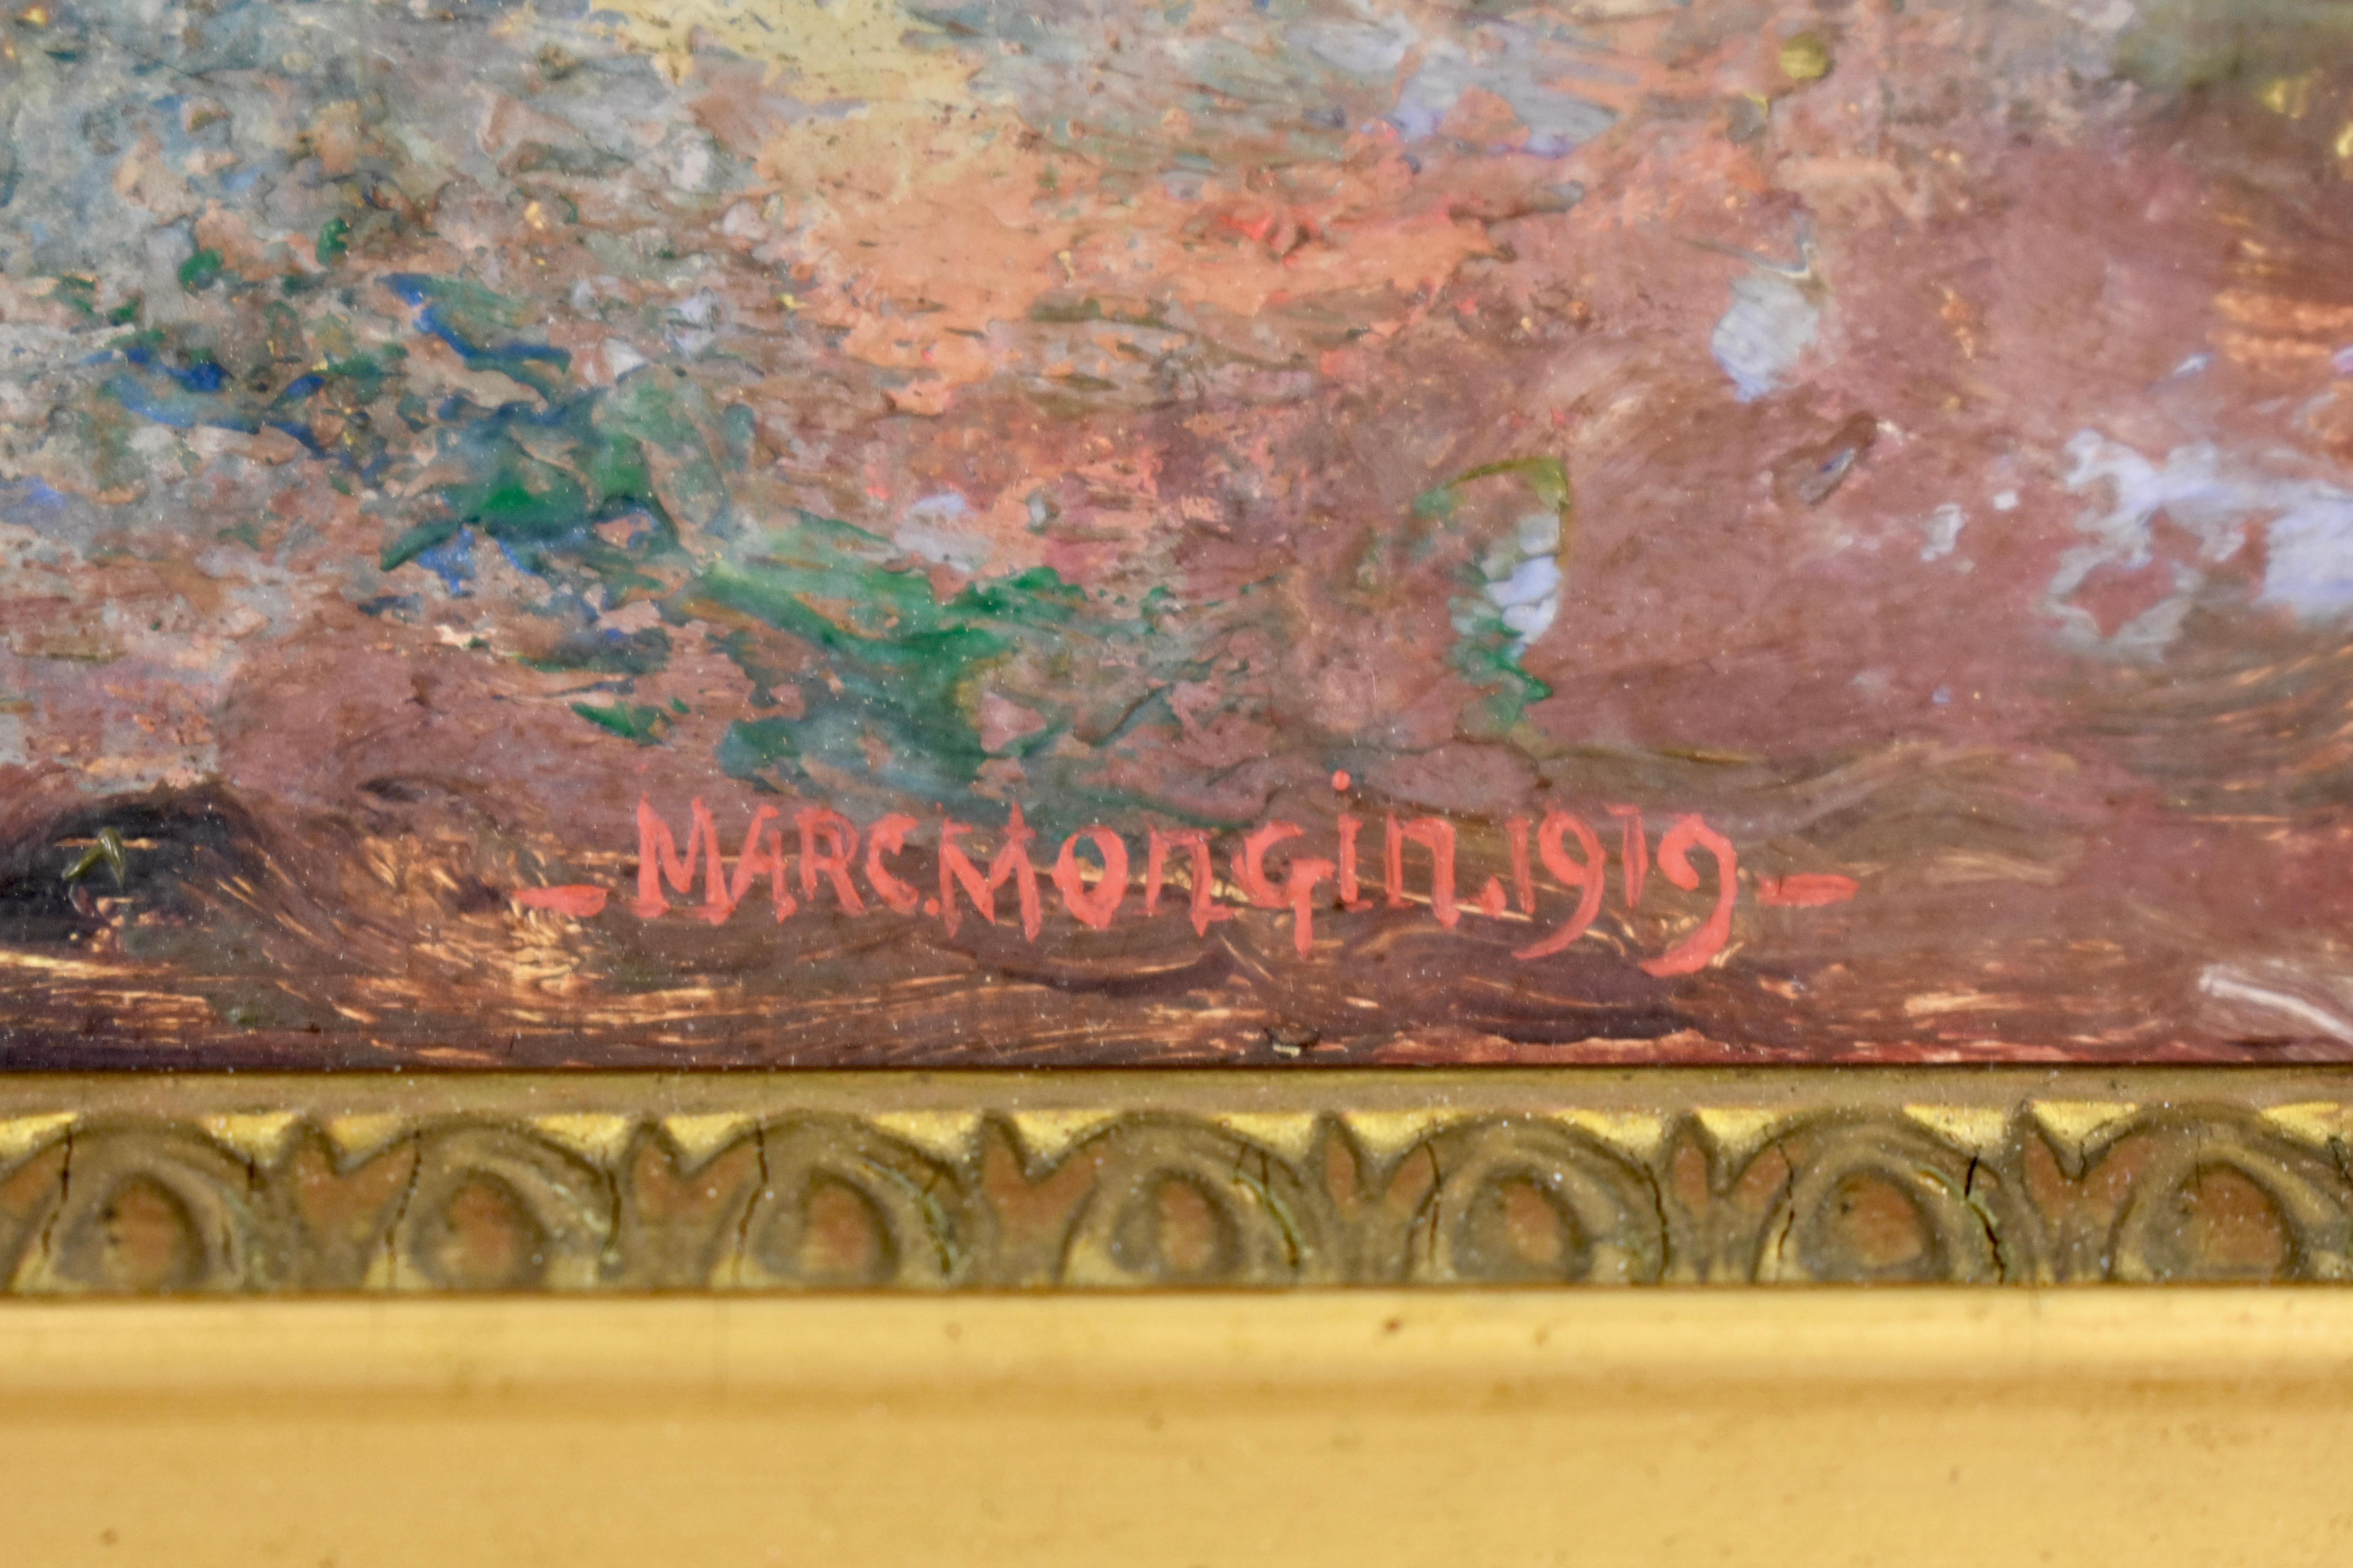 Ein in Frankreich gefundenes Landschaftsgemälde in Öl auf Leinen, in einem breiten, mit Blattgold verzierten Holzrahmen, signiert und datiert 1919.

Die vom französischen Künstler Marc Mongin gemalte Szene ist typisch für die kleinen Bauernhöfe in